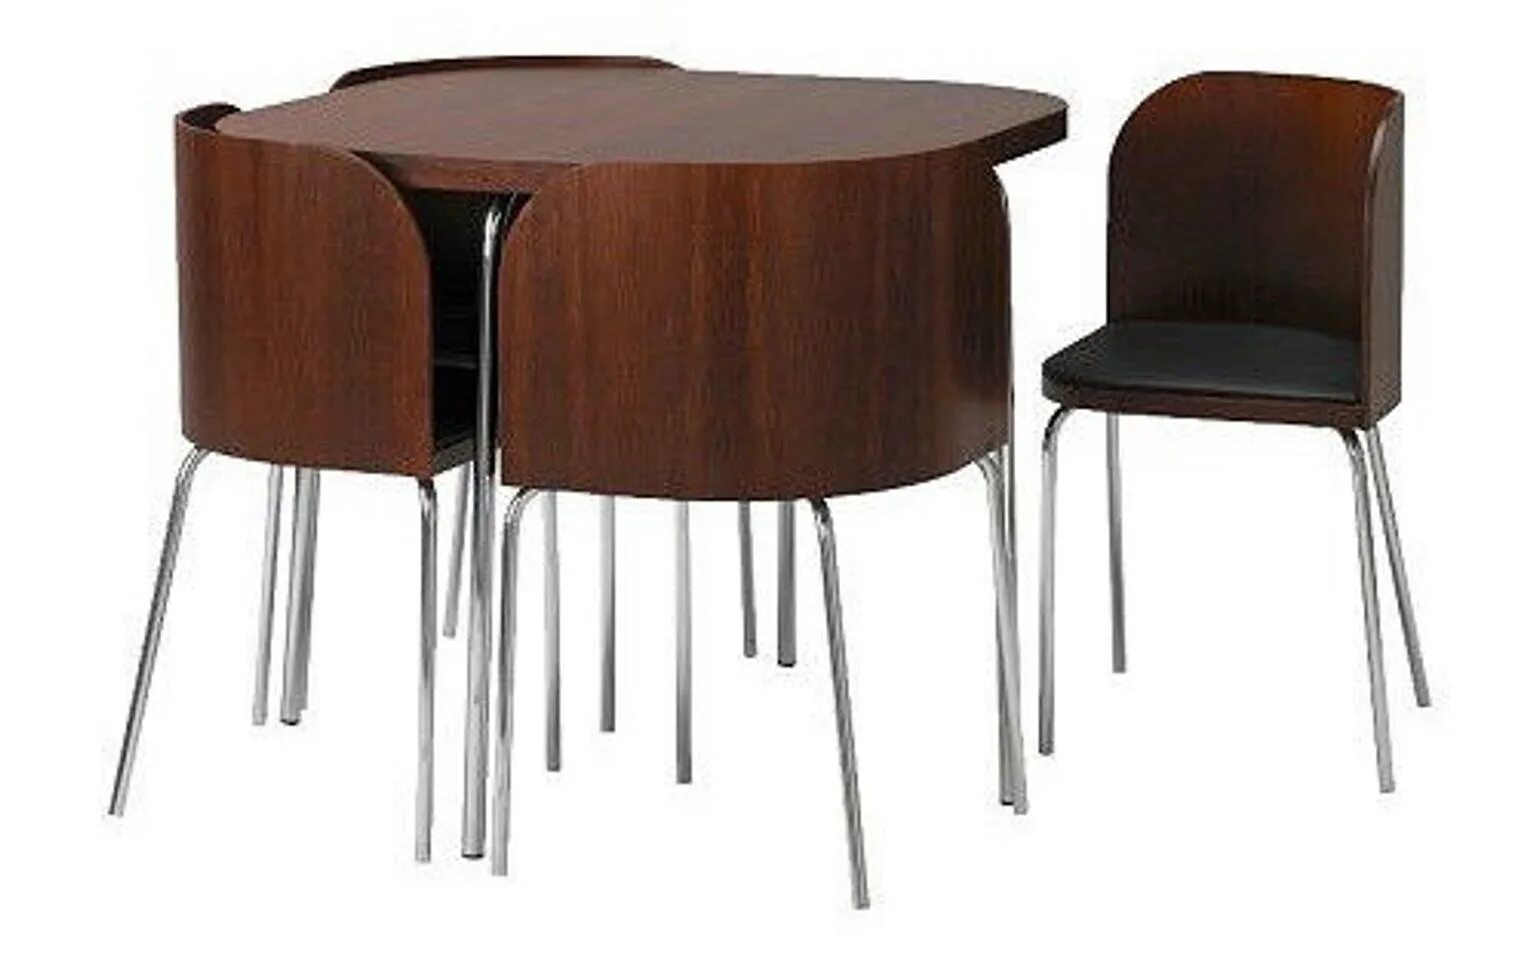 Четверо стульев. Стол Fusion ikea. Икеа Фузион. Стол с задвижными стульями ikea Fusion. Круглый стол с выдвижными стульями.